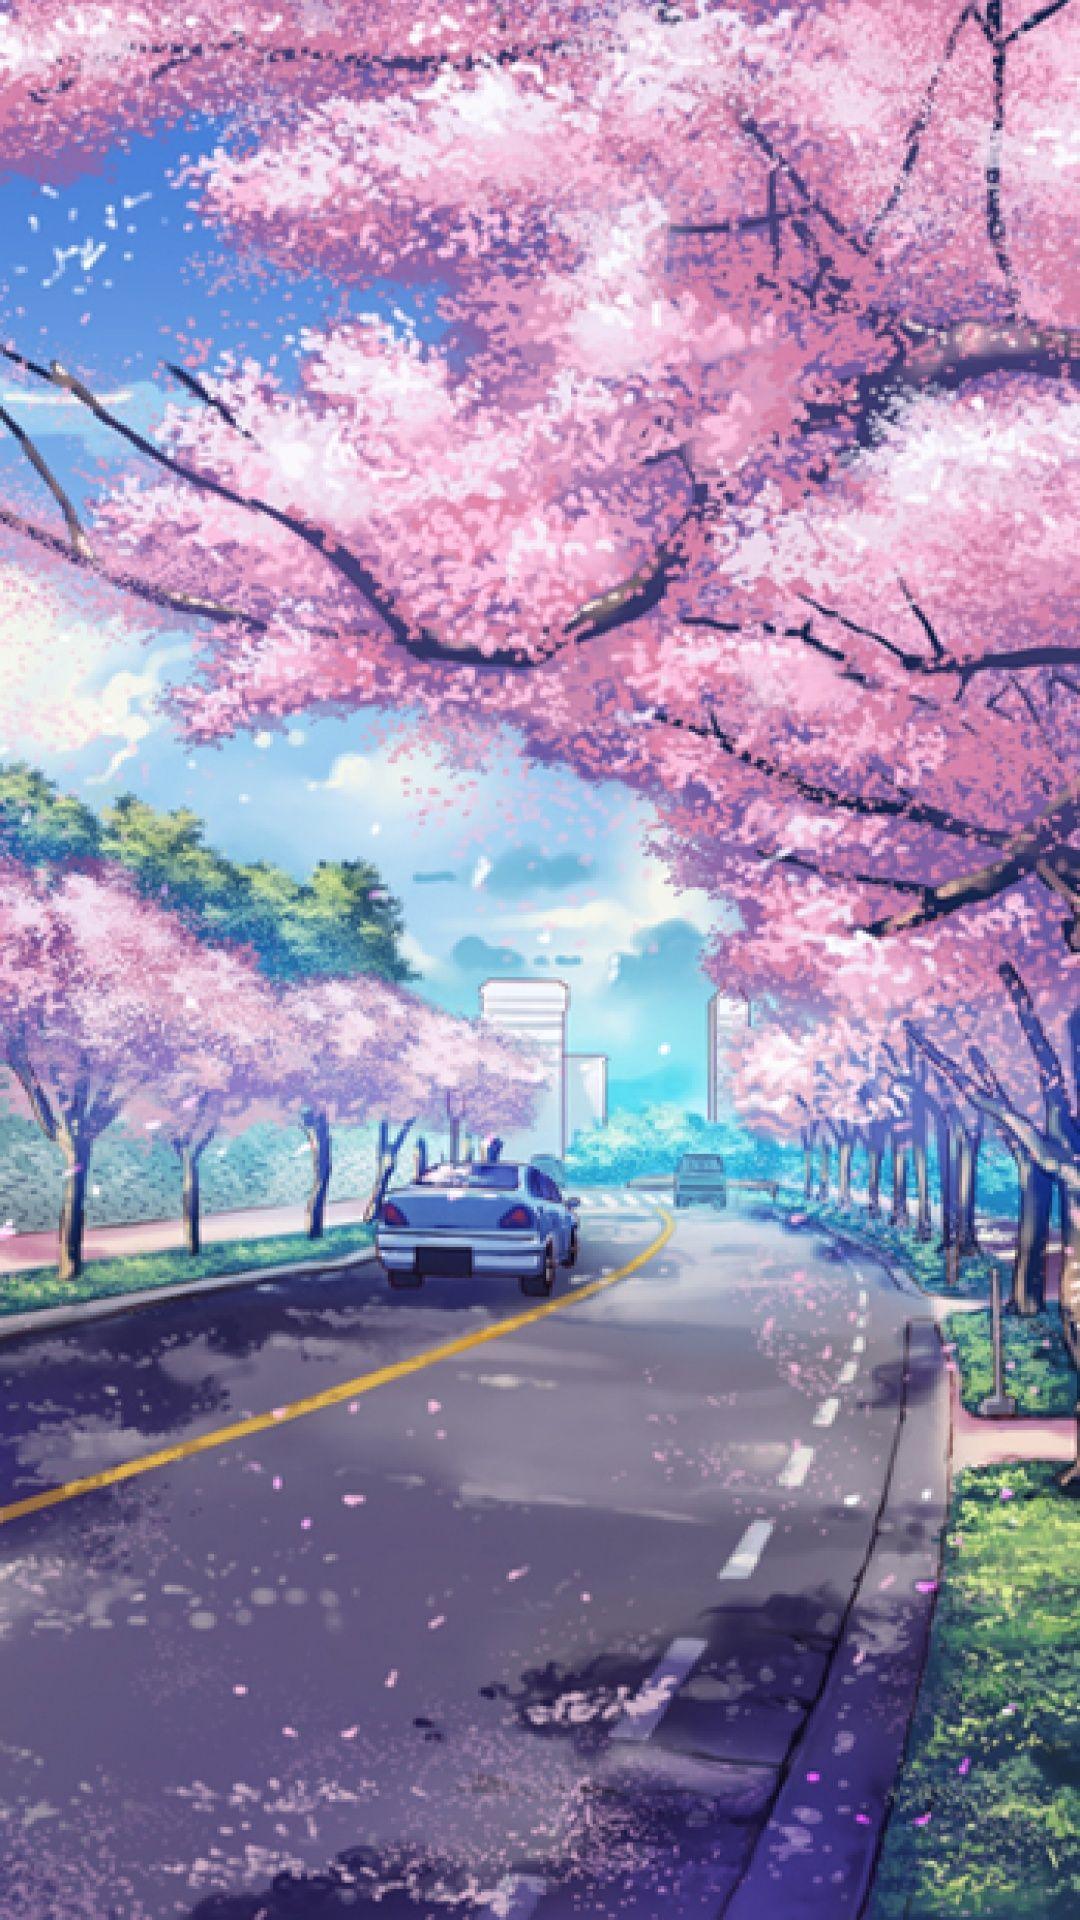 Anime Scenery iPhone Wallpapers - Top Những Hình Ảnh Đẹp